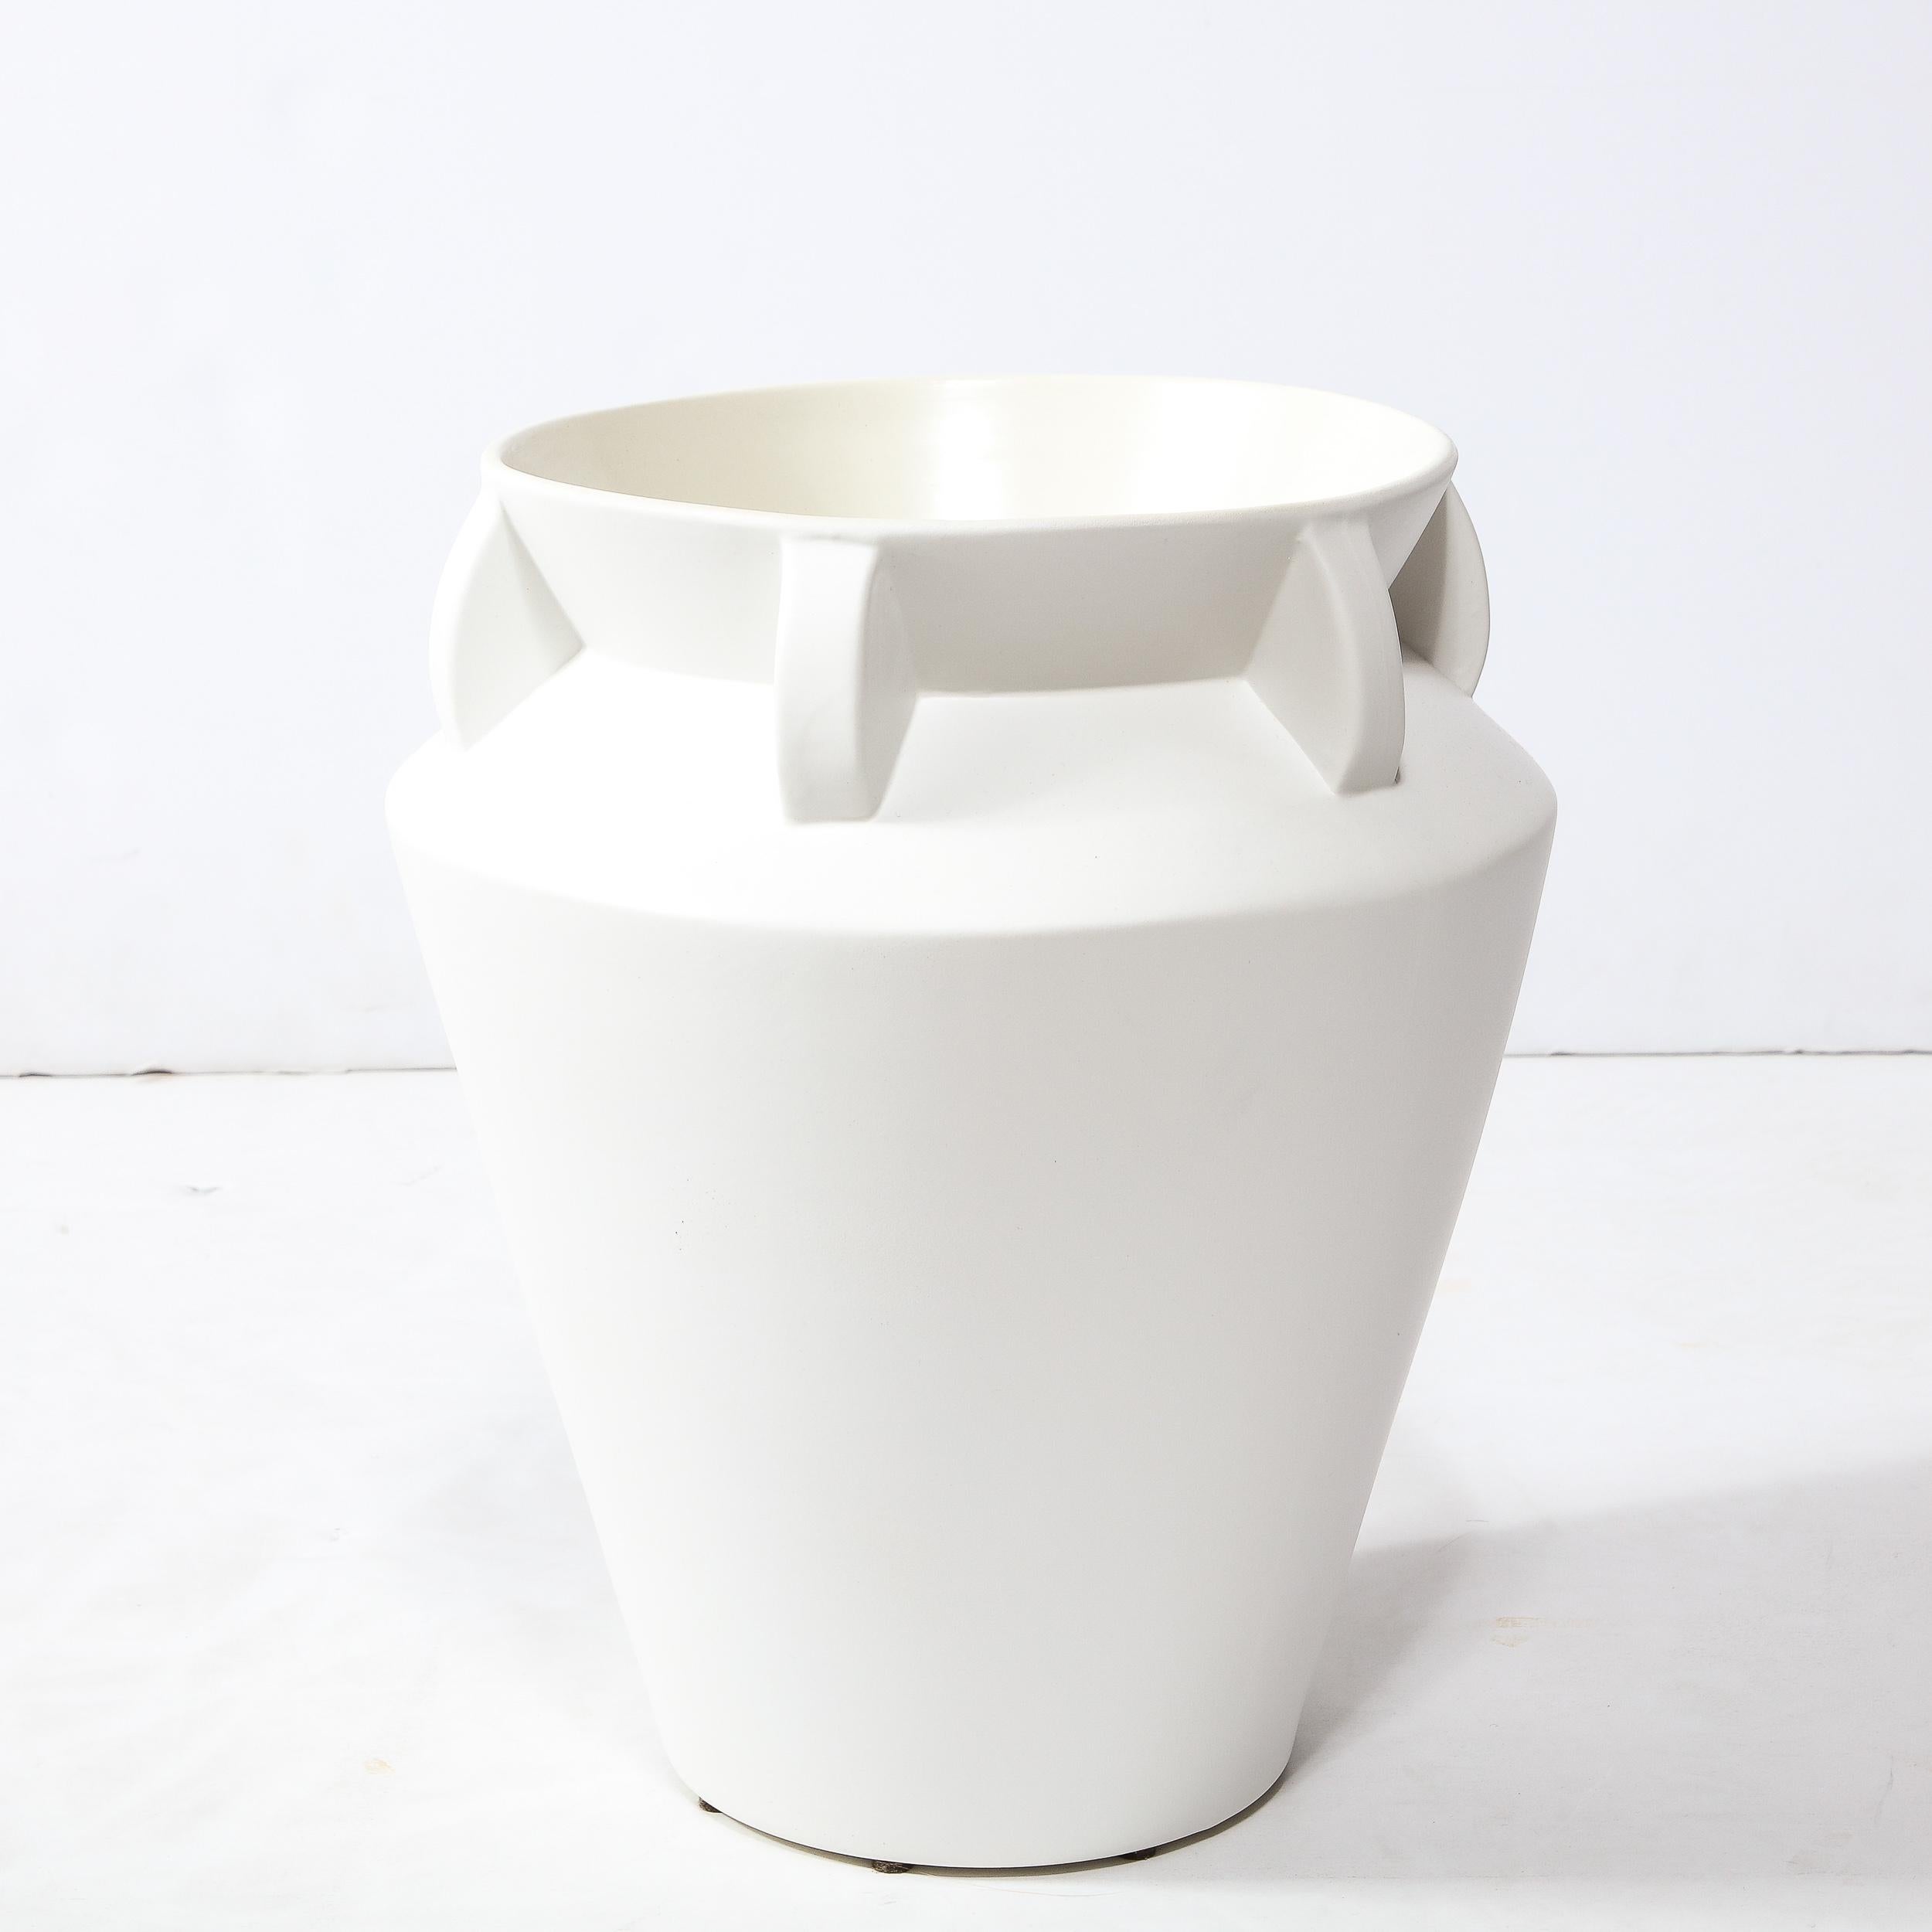 Diese elegante modernistische Vase in Urnenform wurde in der zweiten Hälfte des 20. Jahrhunderts in den Vereinigten Staaten hergestellt. Er hat einen konischen Körper, der sich zu einem abgewinkelten Kragen ausweitet, wo er in den Hals übergeht, der